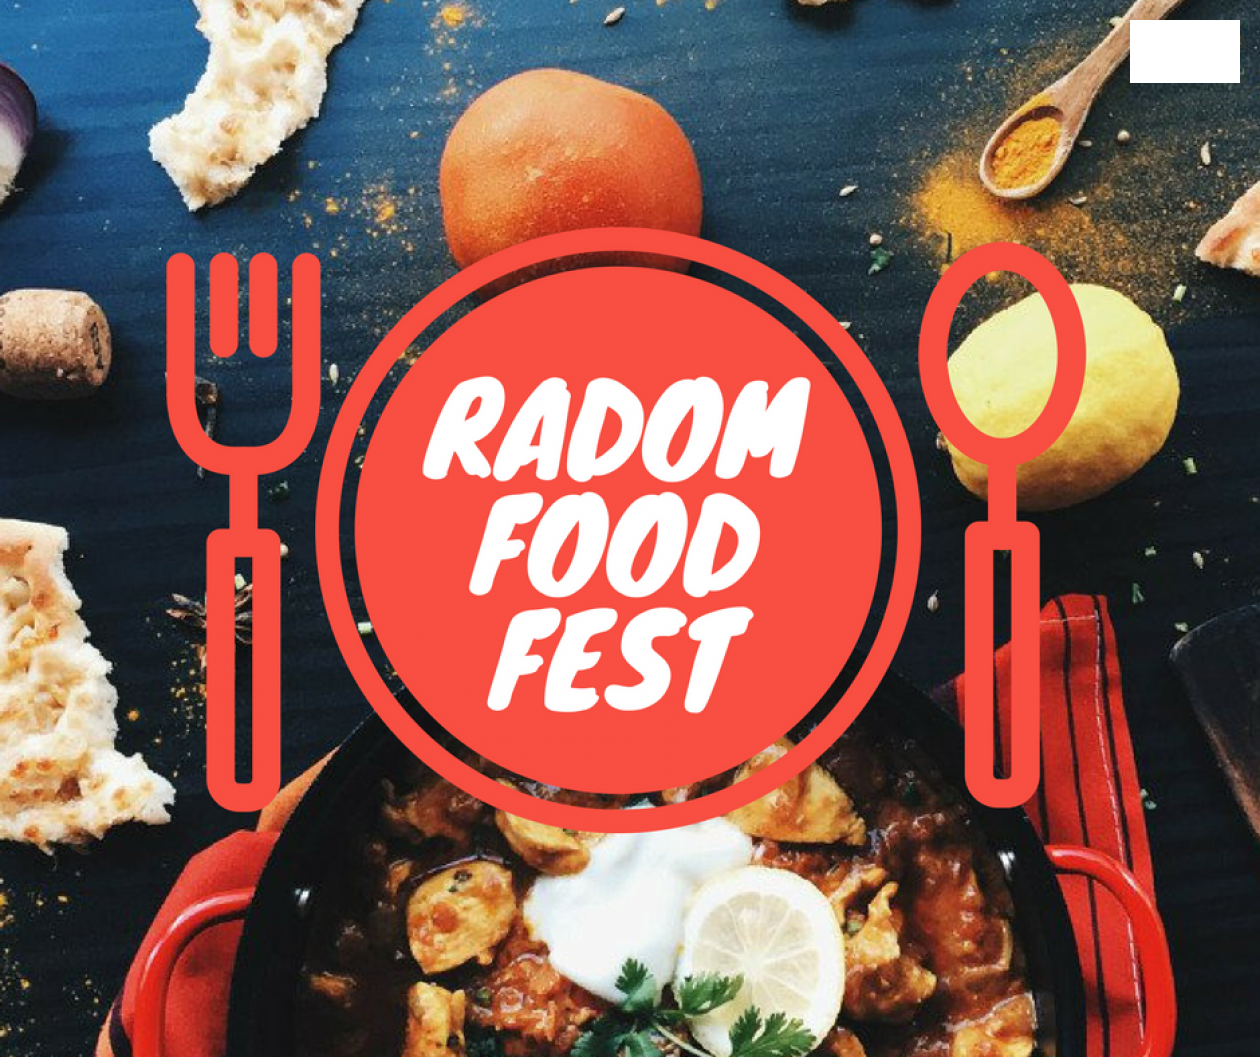 Radom Food Fest. Plebiscyt